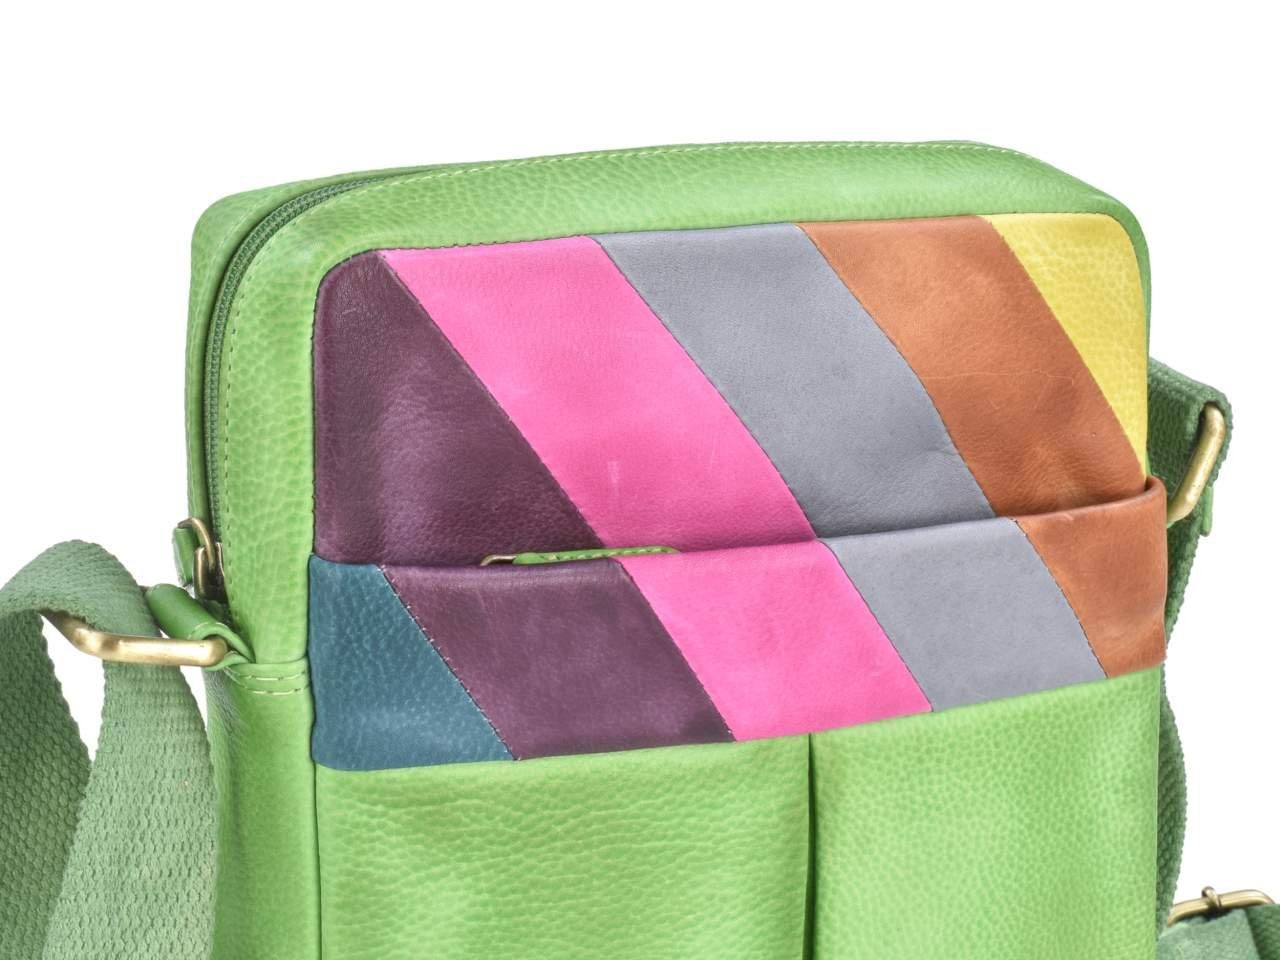 Handtasche, Candy 22x27cm, Shop, forest/multi bunt, Umhängetasche Schultertasche, Muster buntes Greenburry